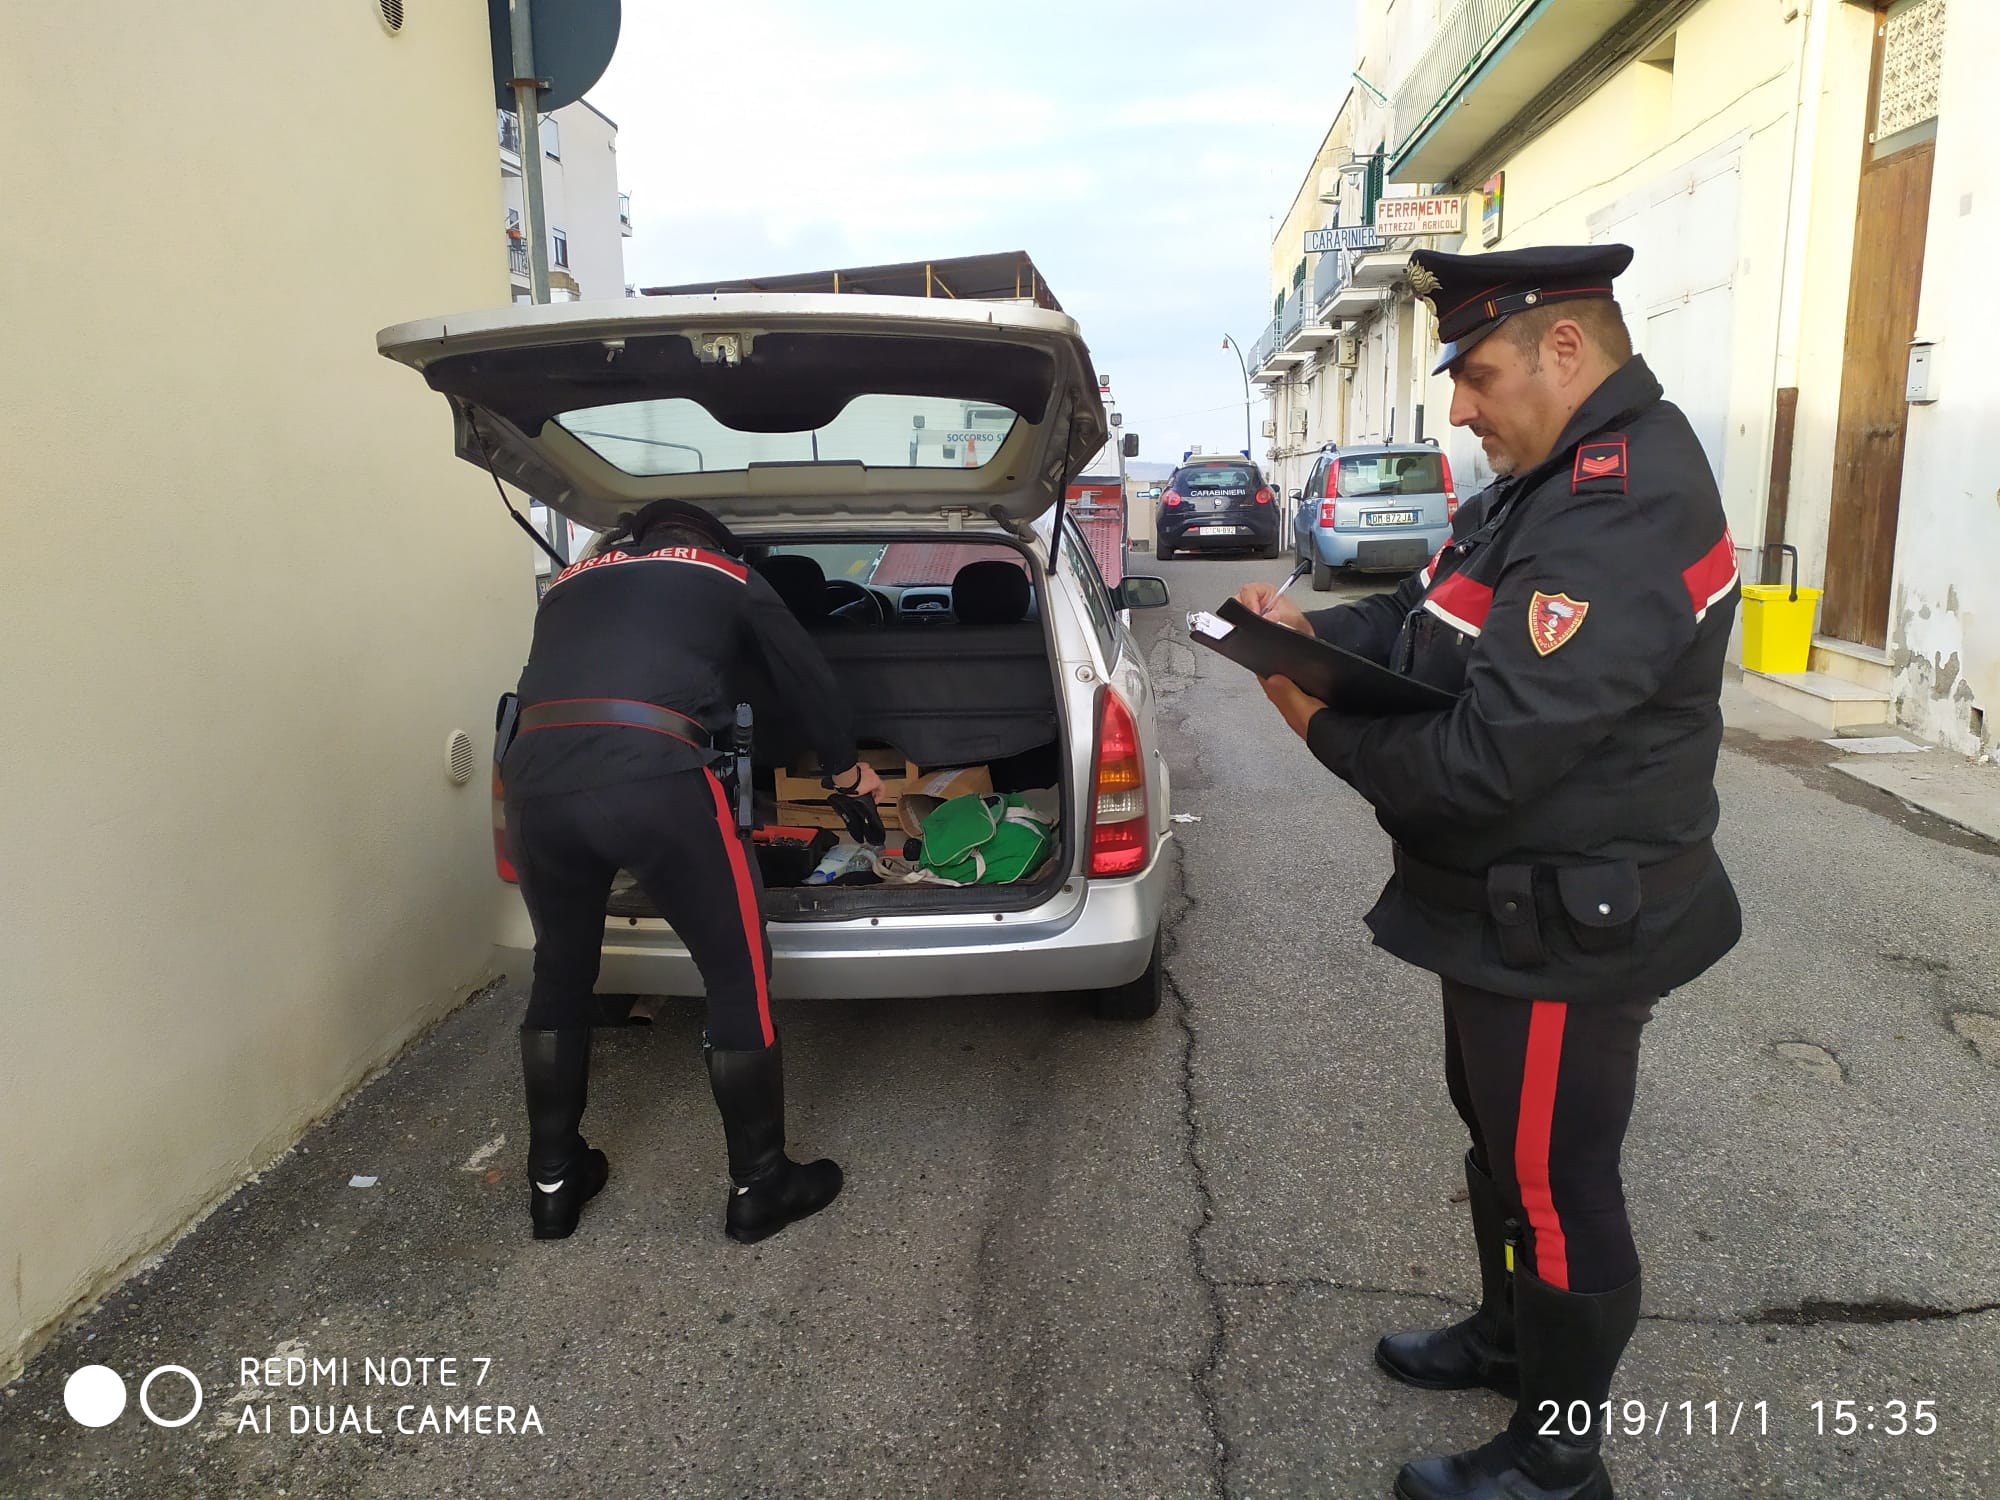 Strappa la borsa a una signora e fugge in auto. 35enne arrestato dai Carabinieri di Ferrandina,  complice denunciata